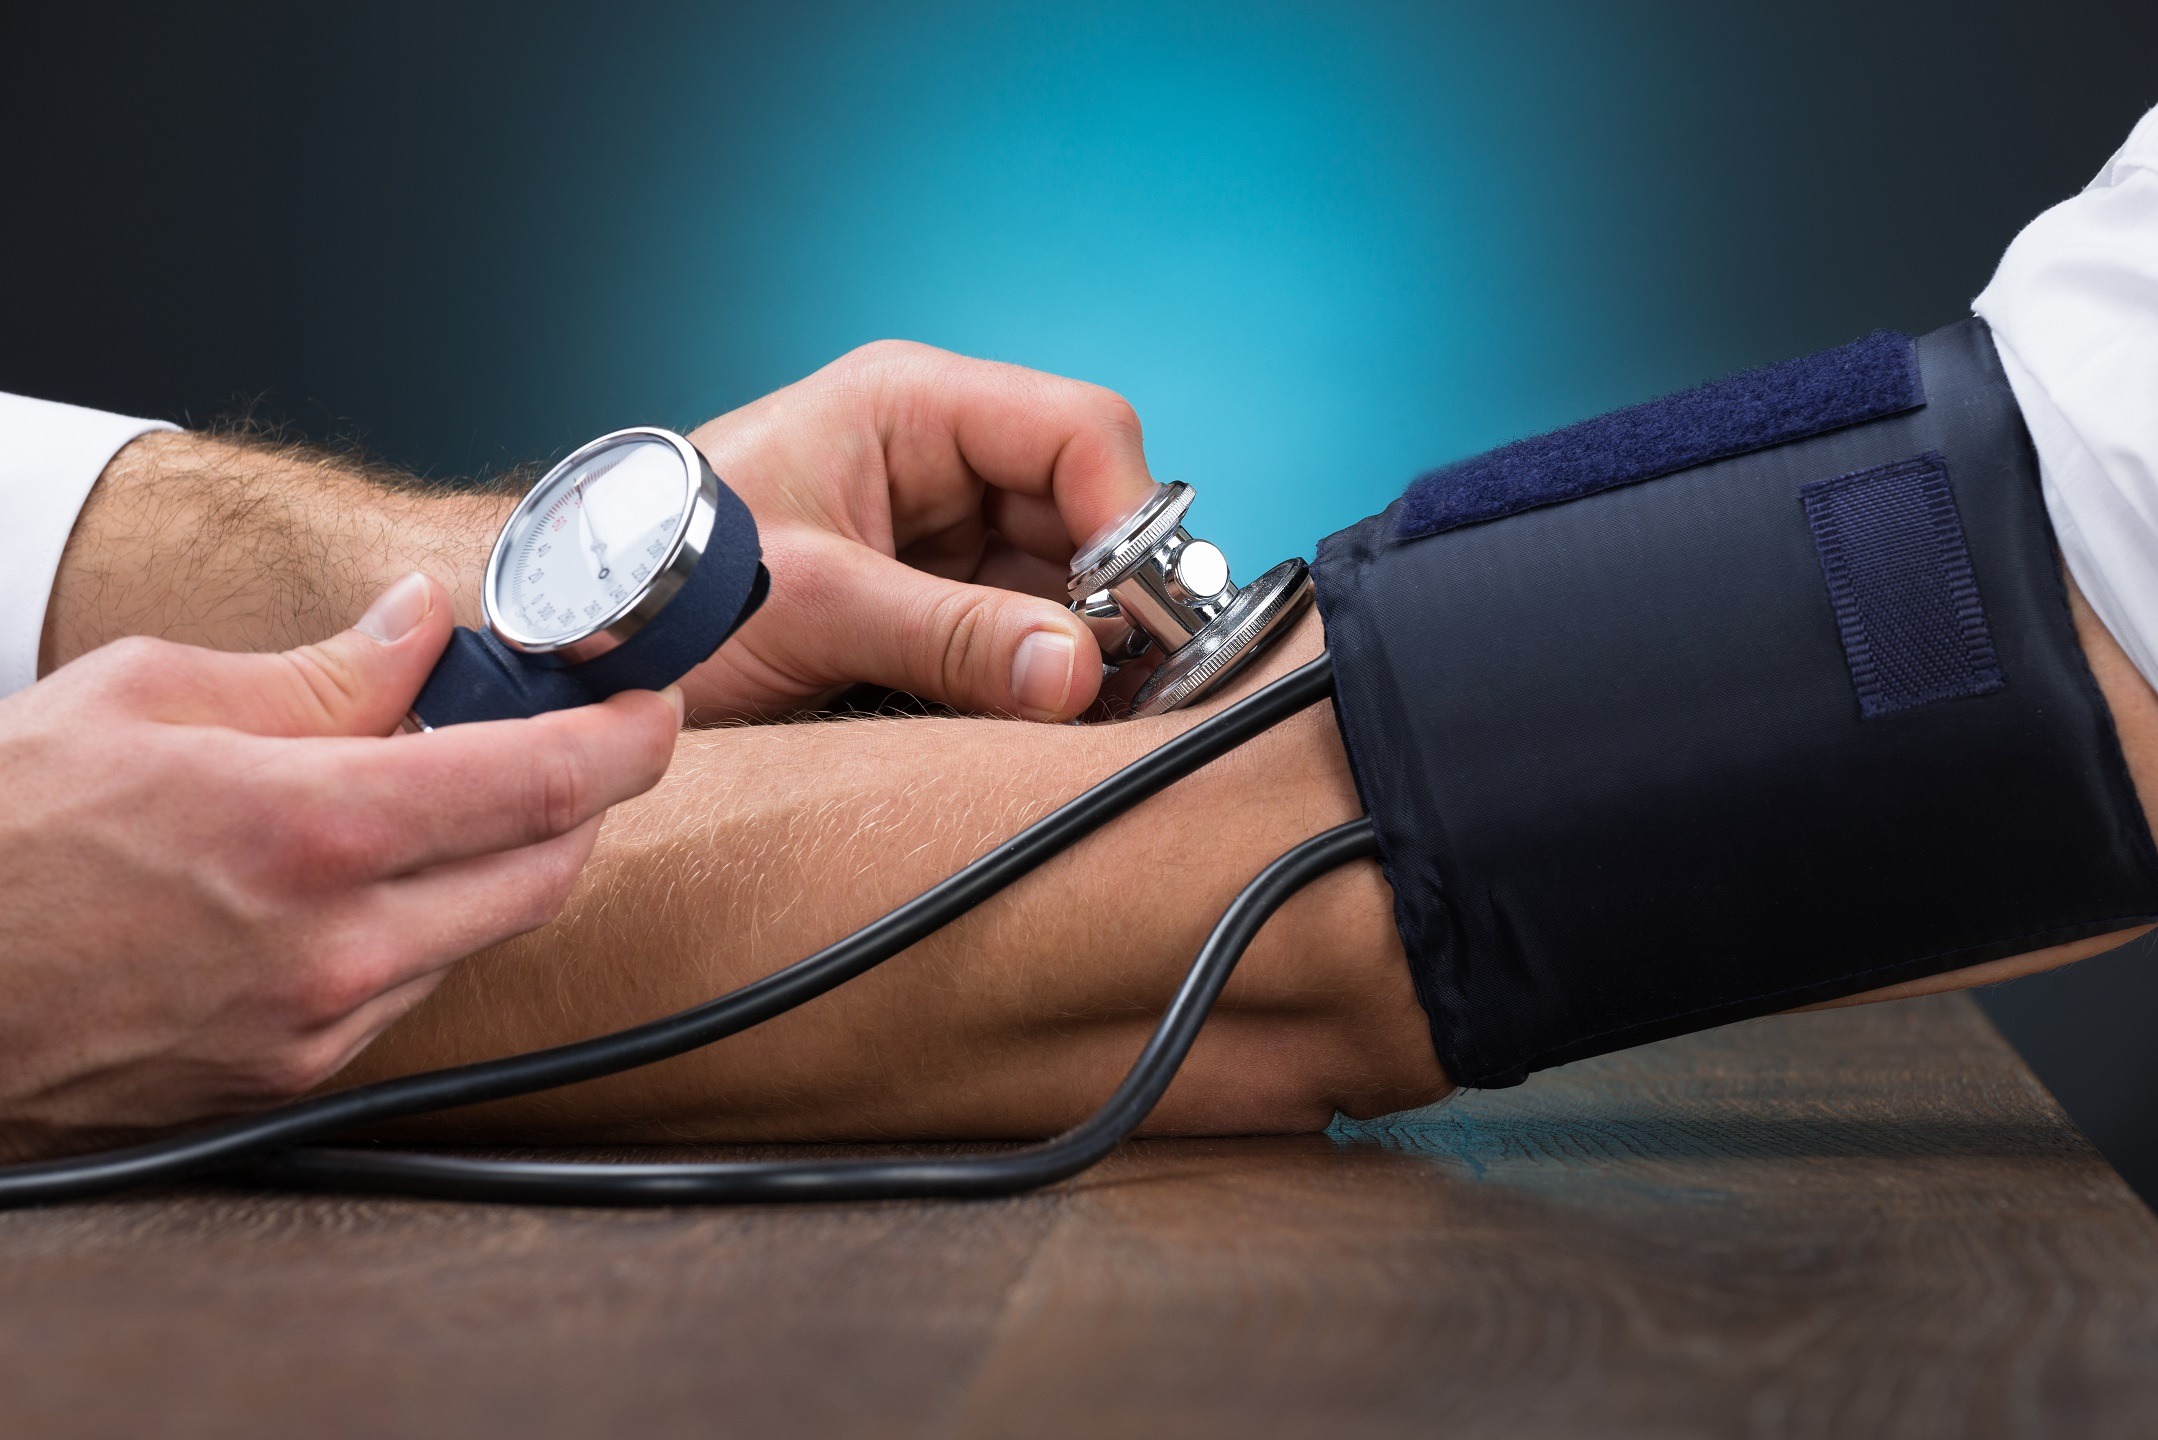 Înainte sau după 45 de ani? Când e mai grav diagnosticul de hipertensiune?